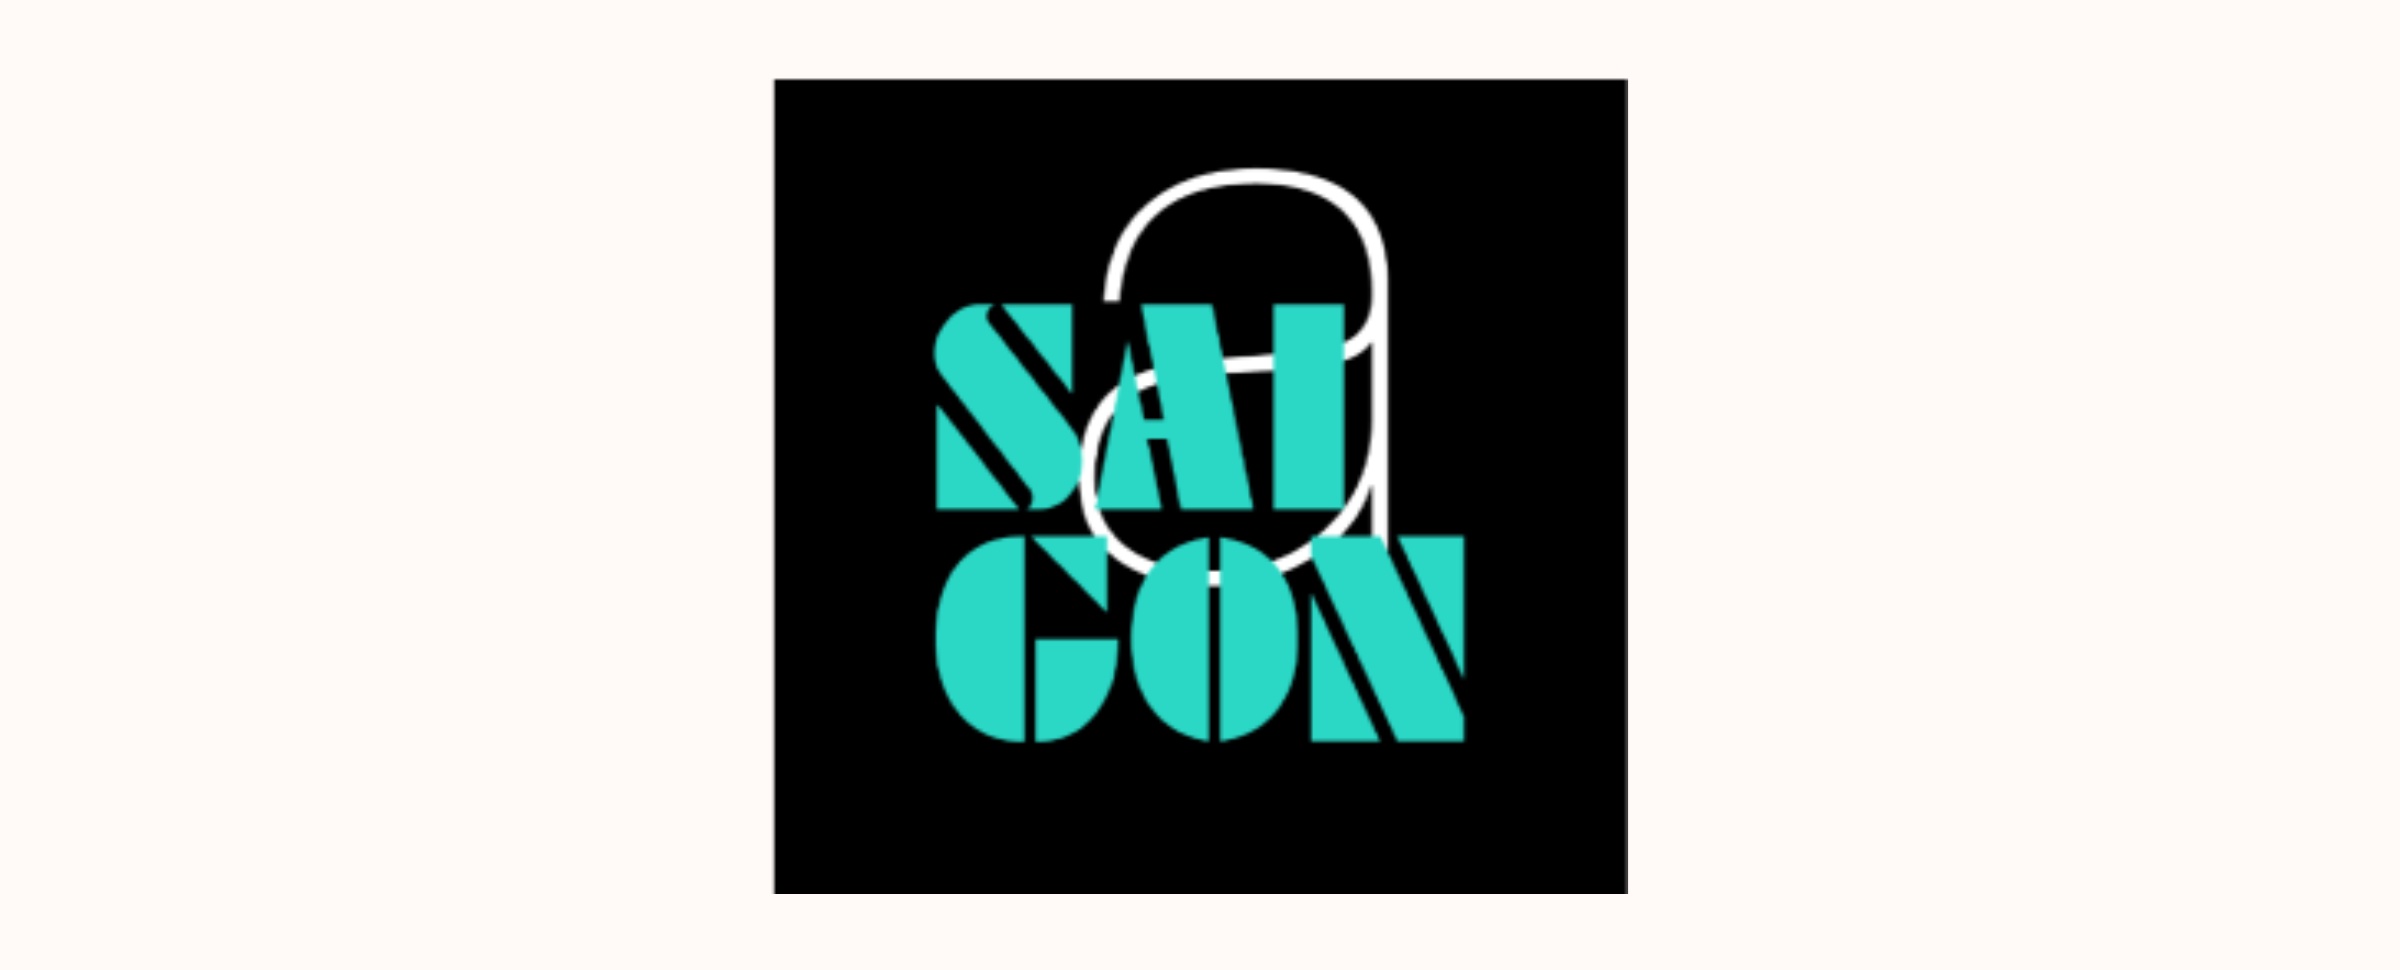 Saigon A logo